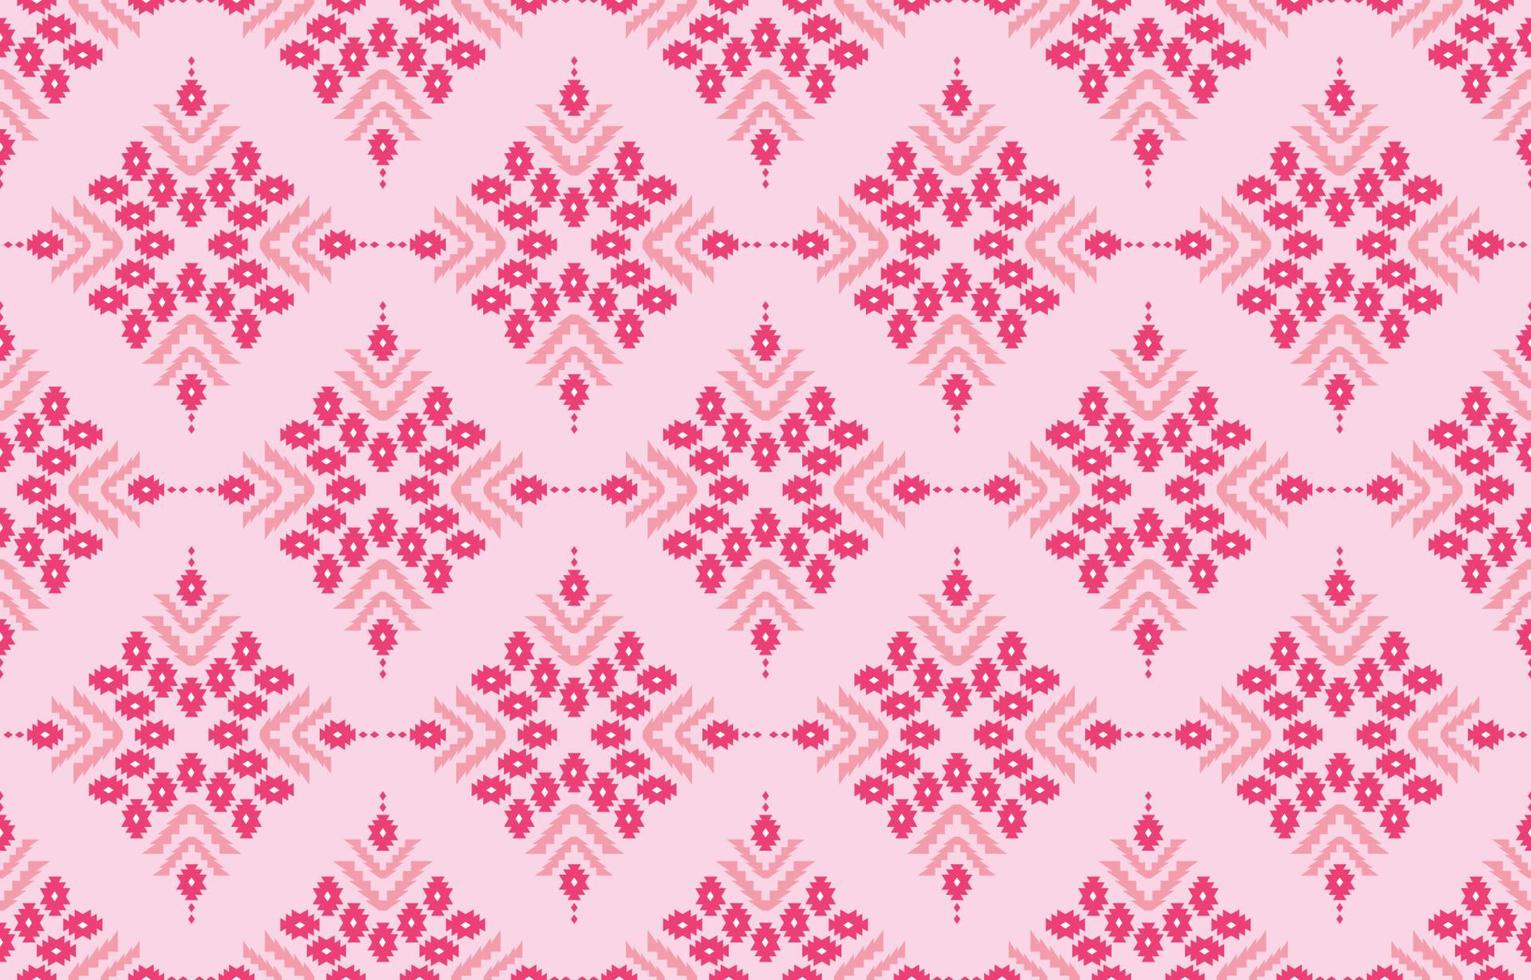 abstrakter Chevron-Hintergrund des ethnischen Designs. nahtloses muster in stammes-, volksstickerei, niedliche rosa farbe. aztekischer geometrischer kunstornamentdruck.design für teppich, tapete, kleidung, verpackung, stoff vektor